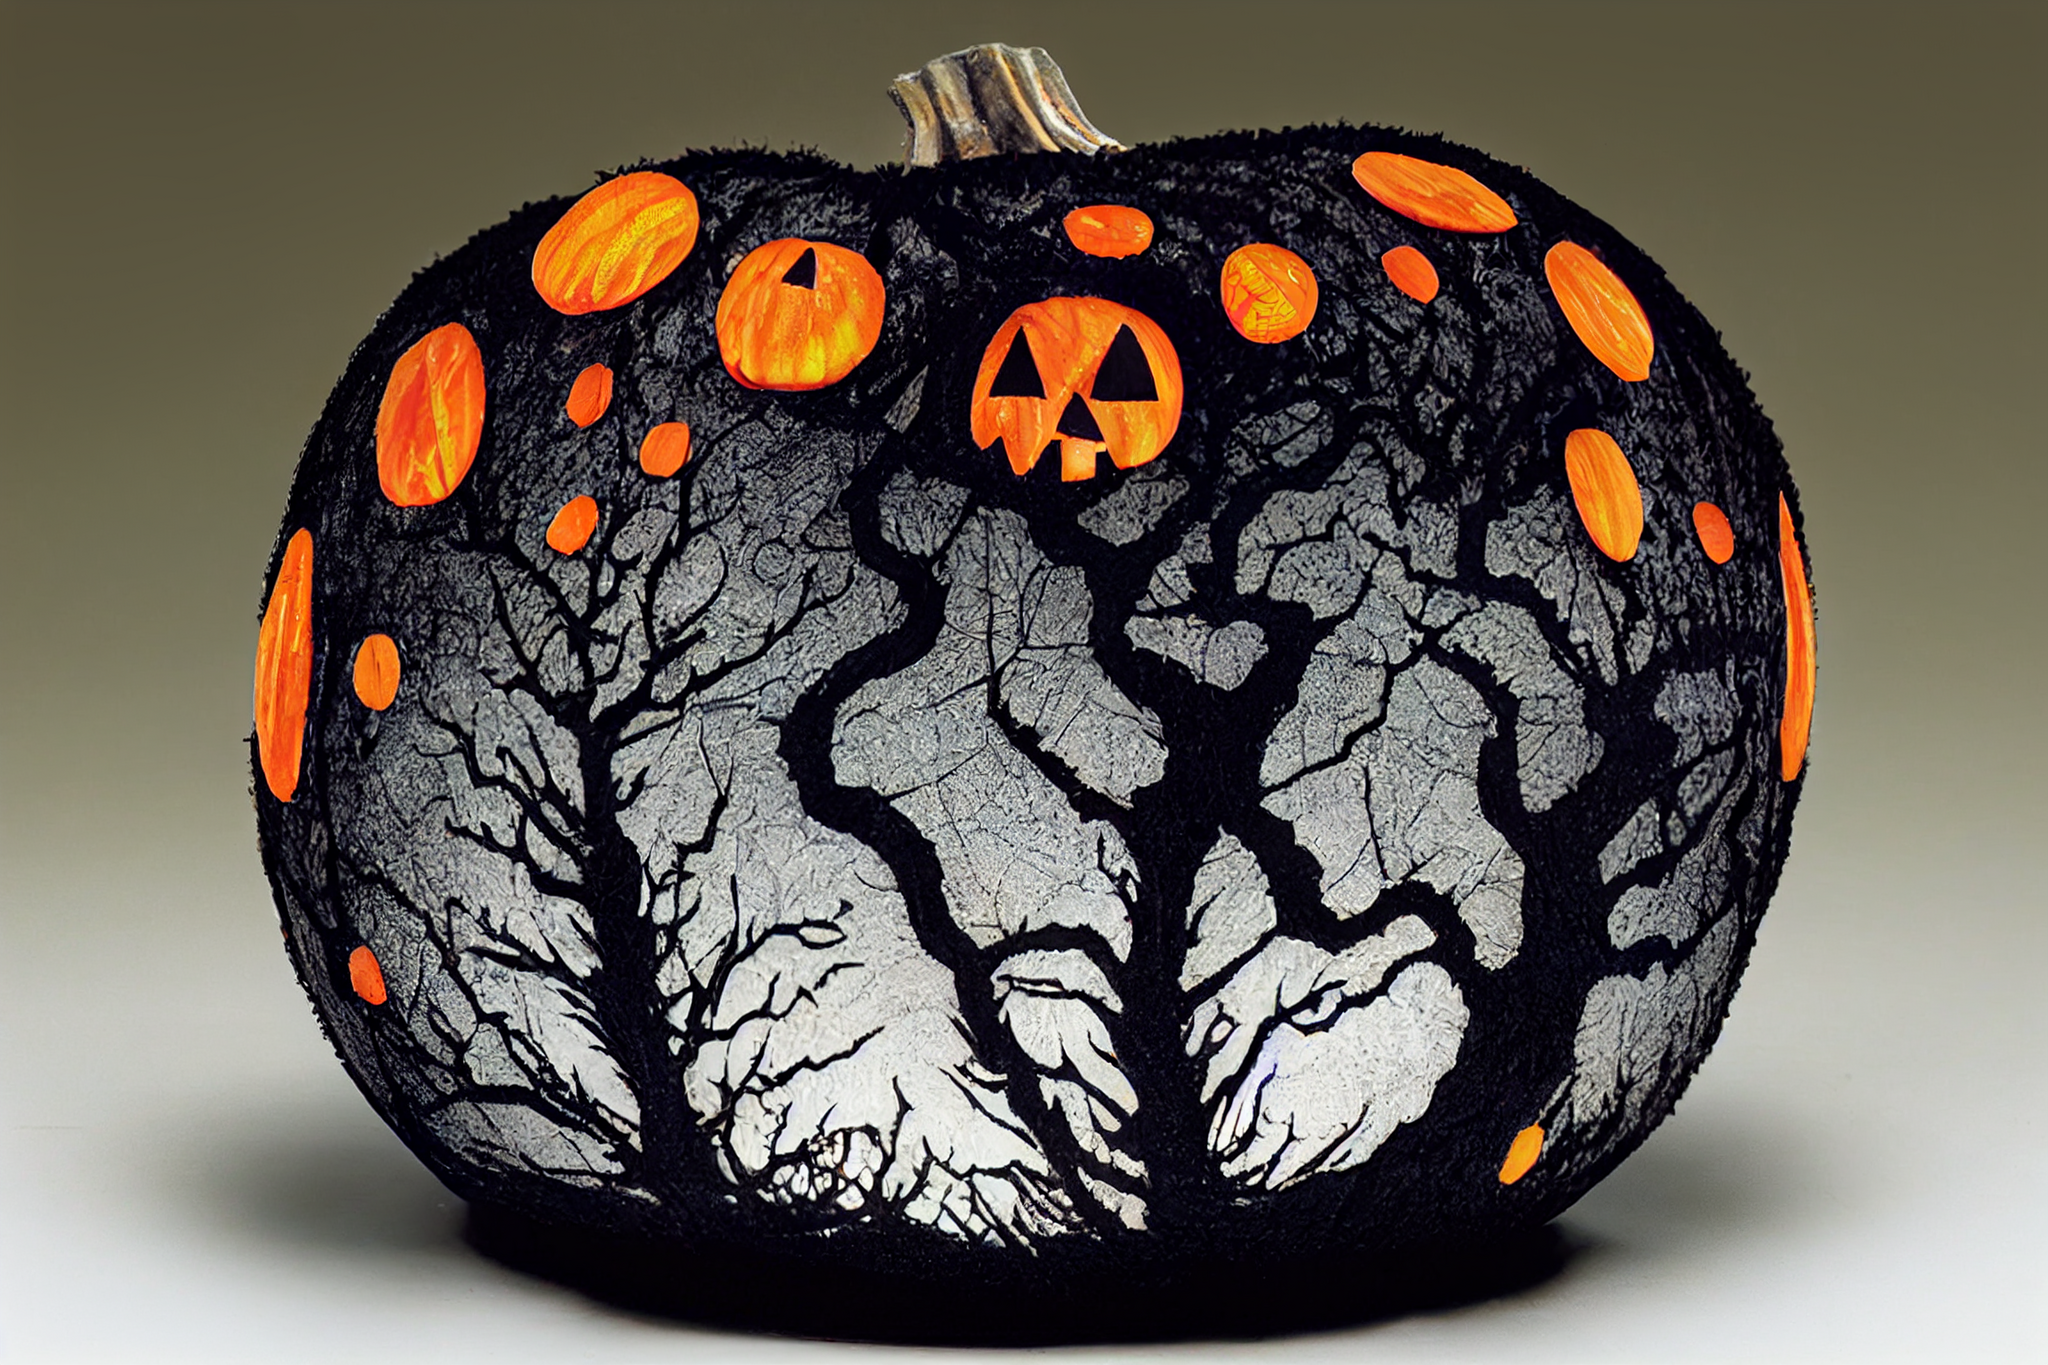 A little bit of neuro-pumpkins - Нейронные сети, Art, Halloween, Halloween pumpkin, Witches, Art, Longpost